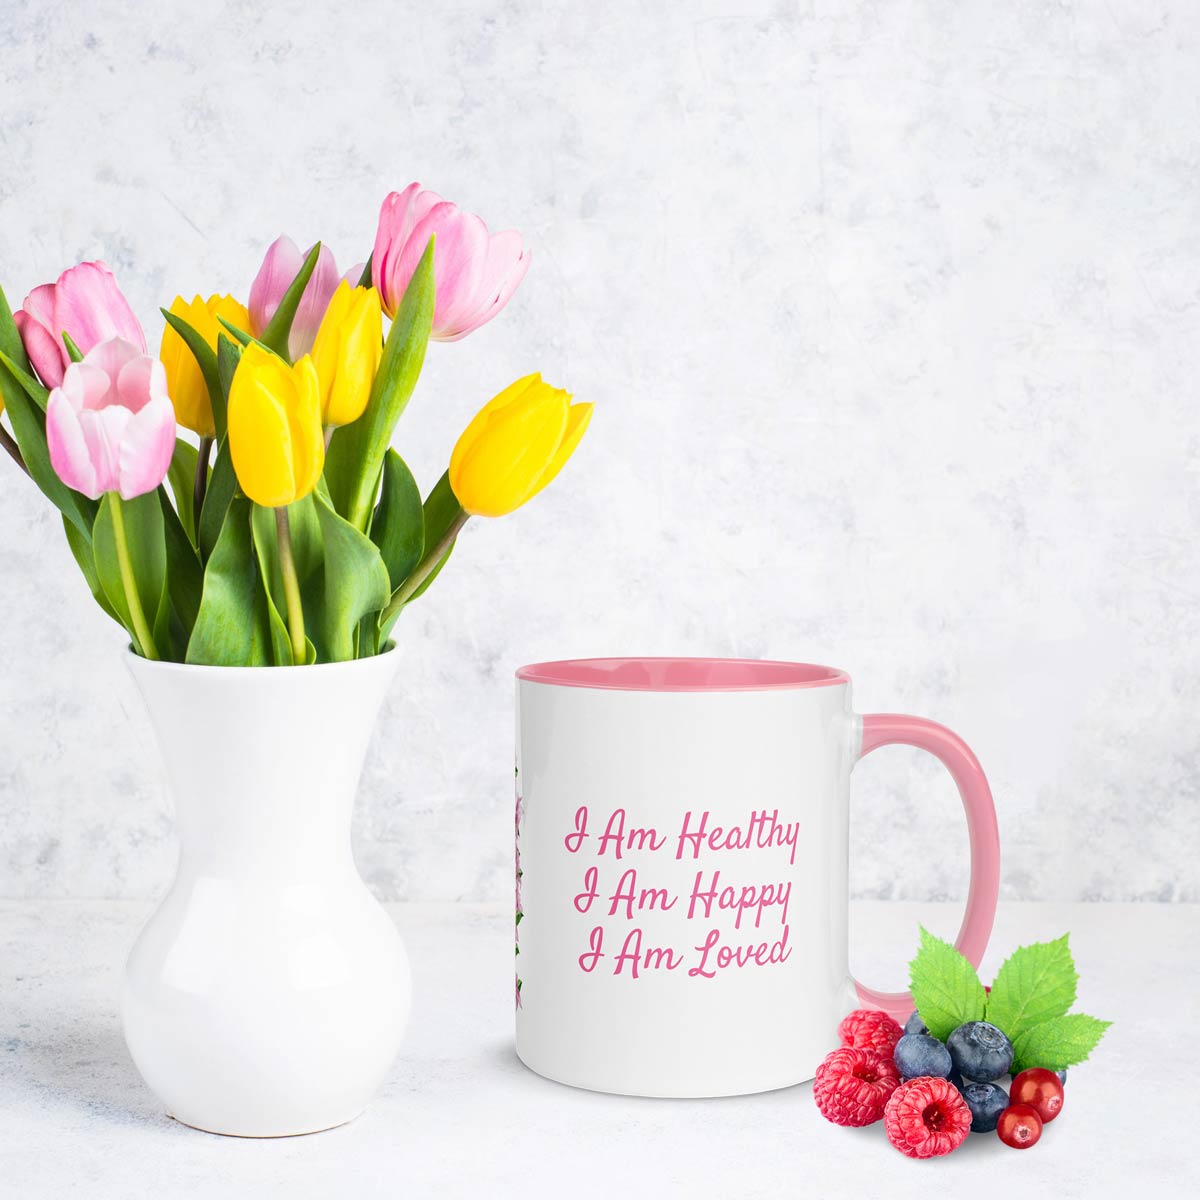 Affirmation mug - I am healthy, I am happy, I am loved